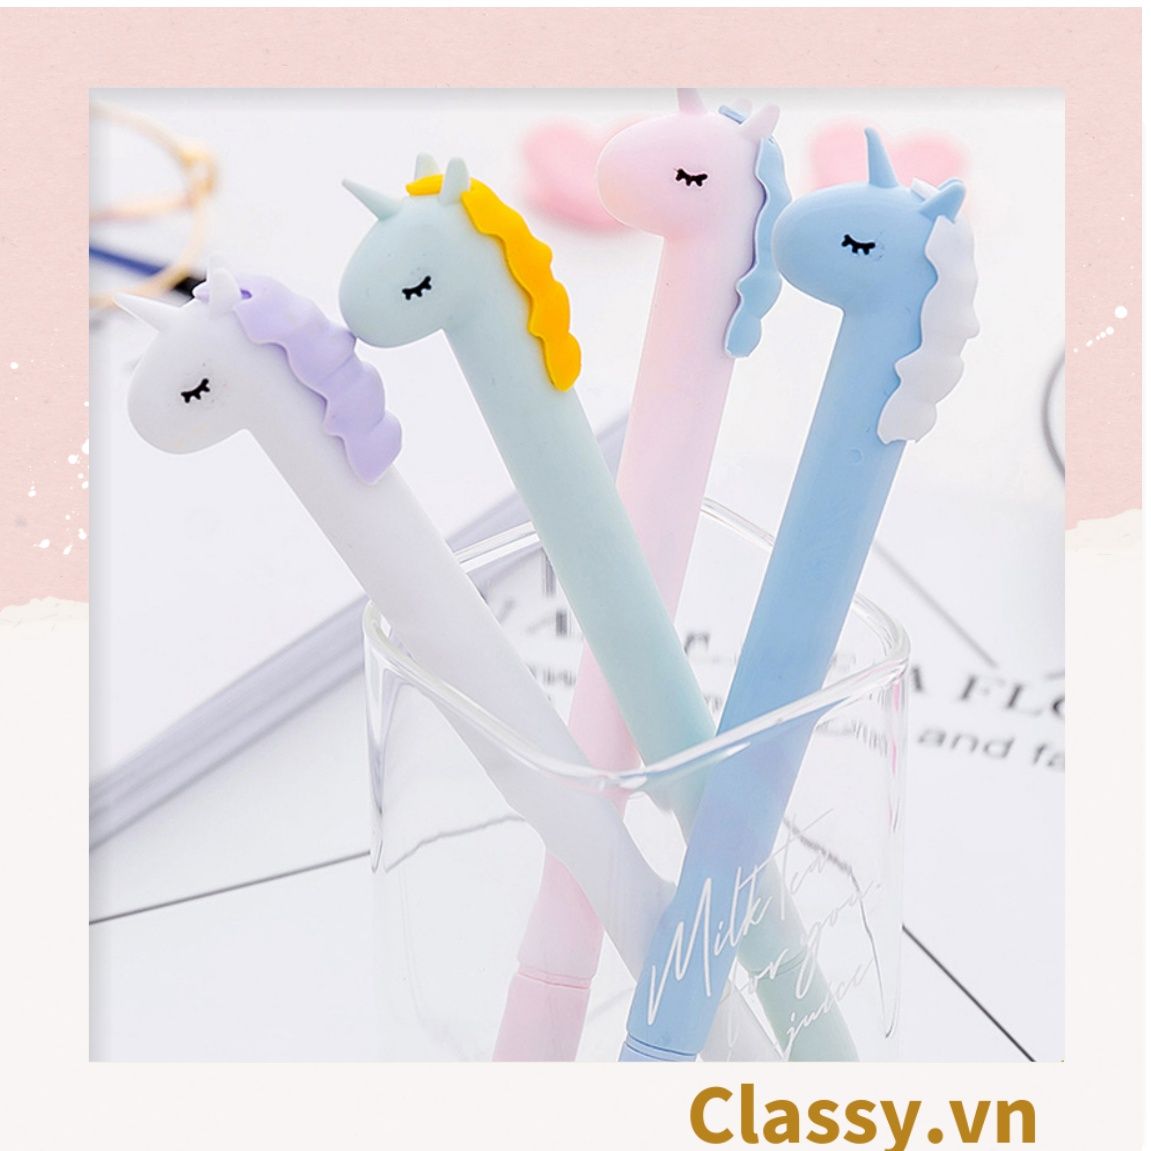  Classy Bút gel ngựa unicorn nhiều màu pastel PK1514 